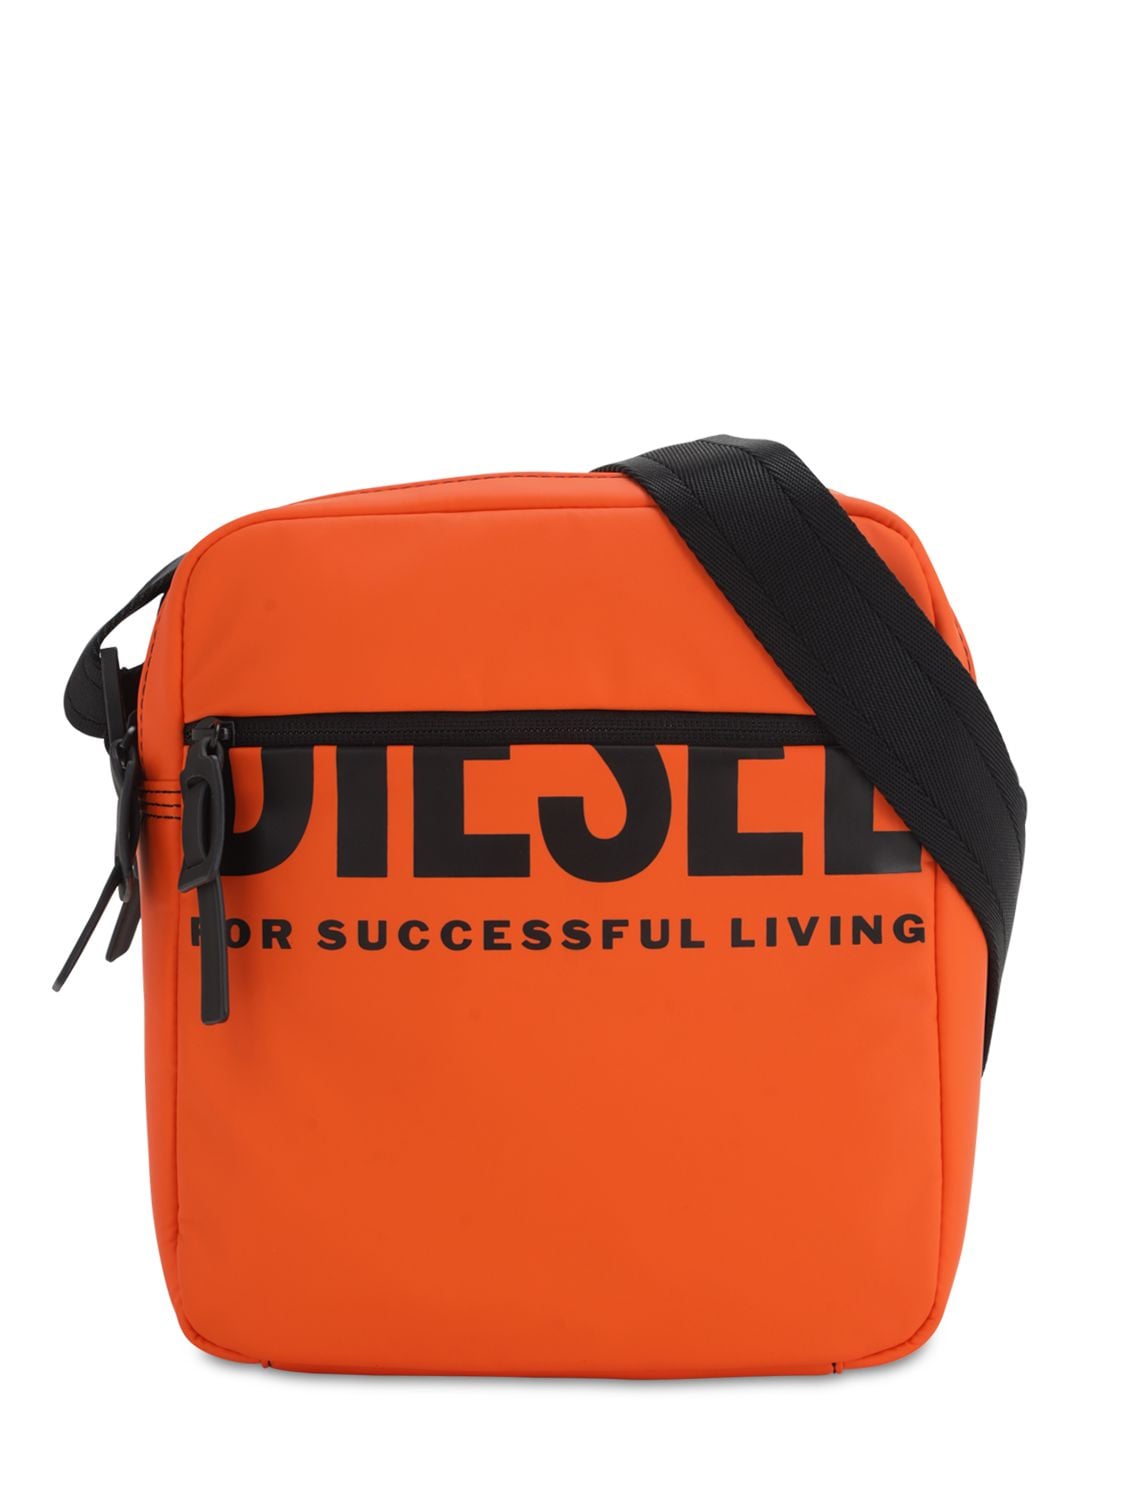 Diesel сумка кроссбоди. Diesel сумка logo. Сумка Diesel оранжевая. Сумка Diesel через плечо с логотипом.